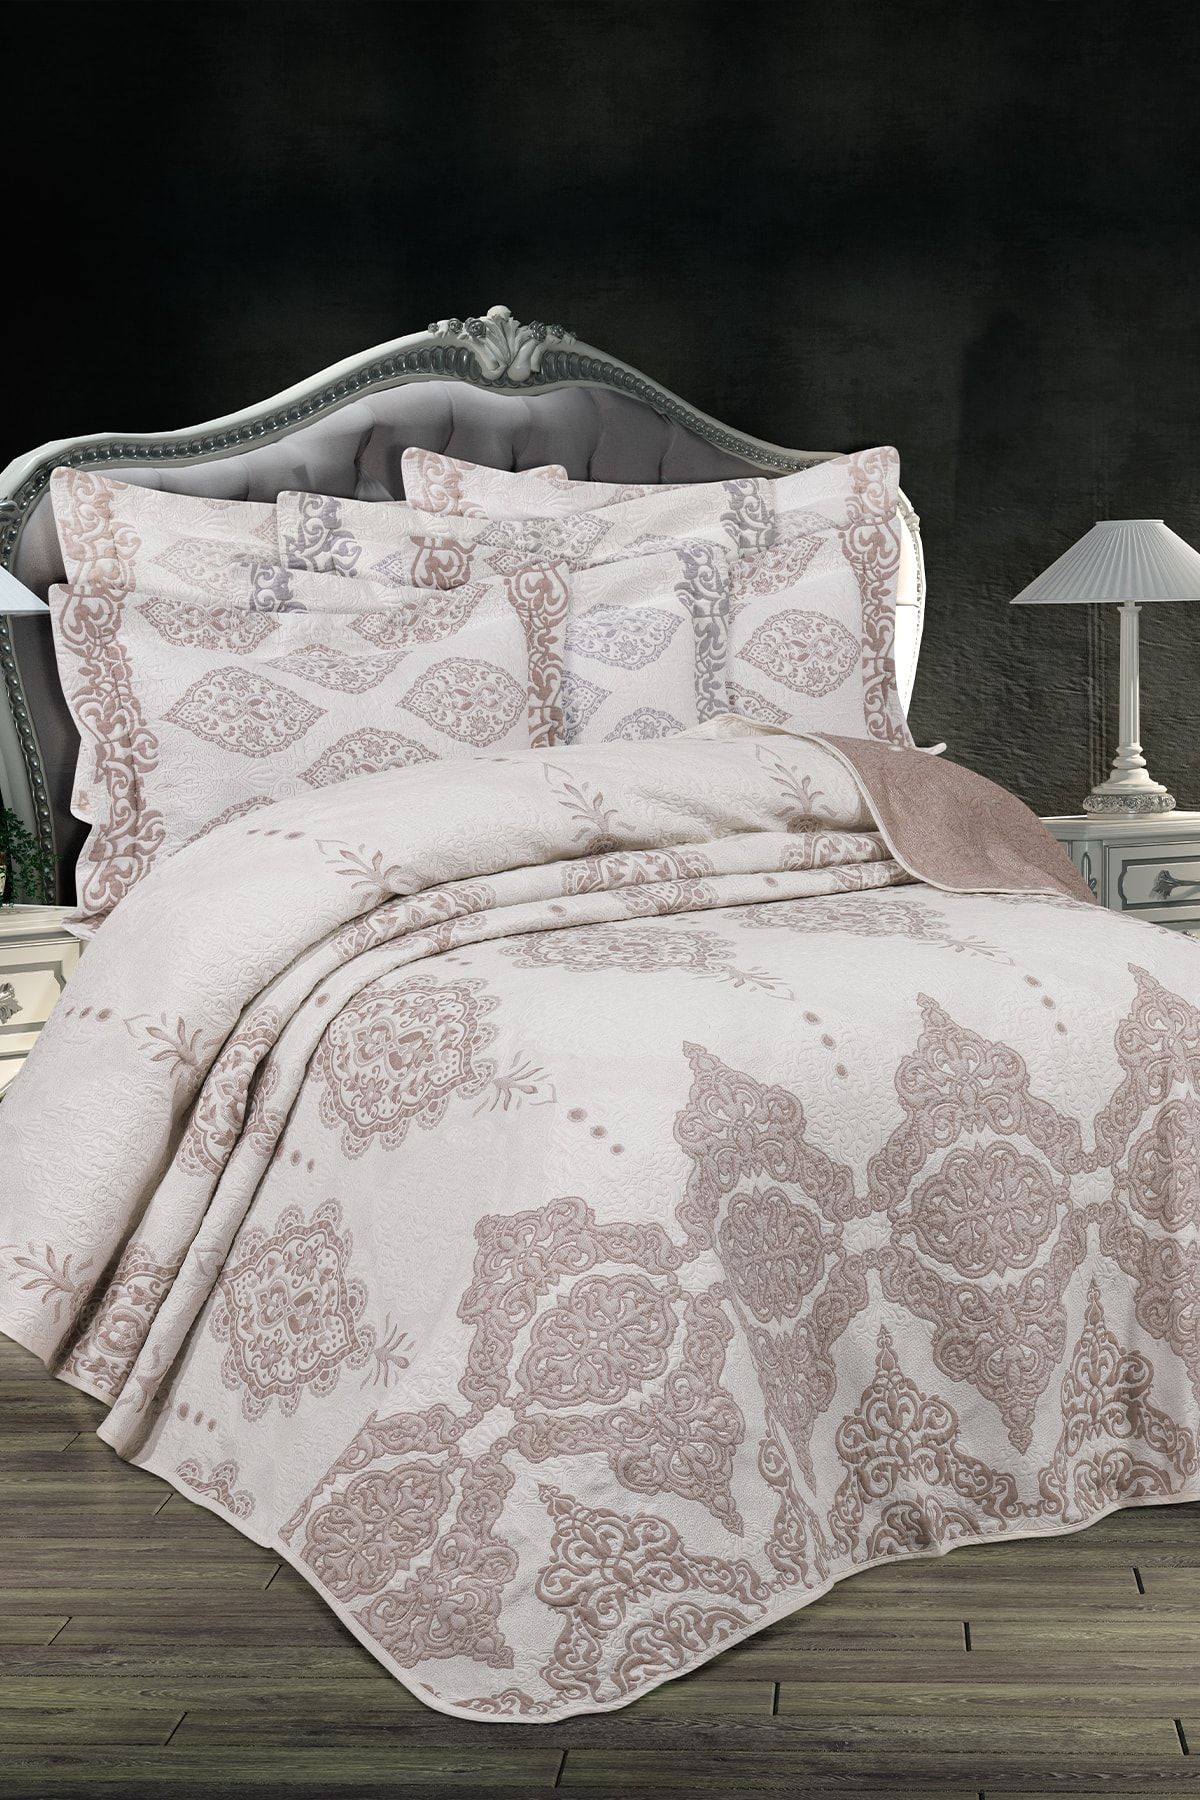 My Bed Home Collection Delüx Hermes Model 3 Parça Yastıklı Yatak Örtüsü Pike Takımı